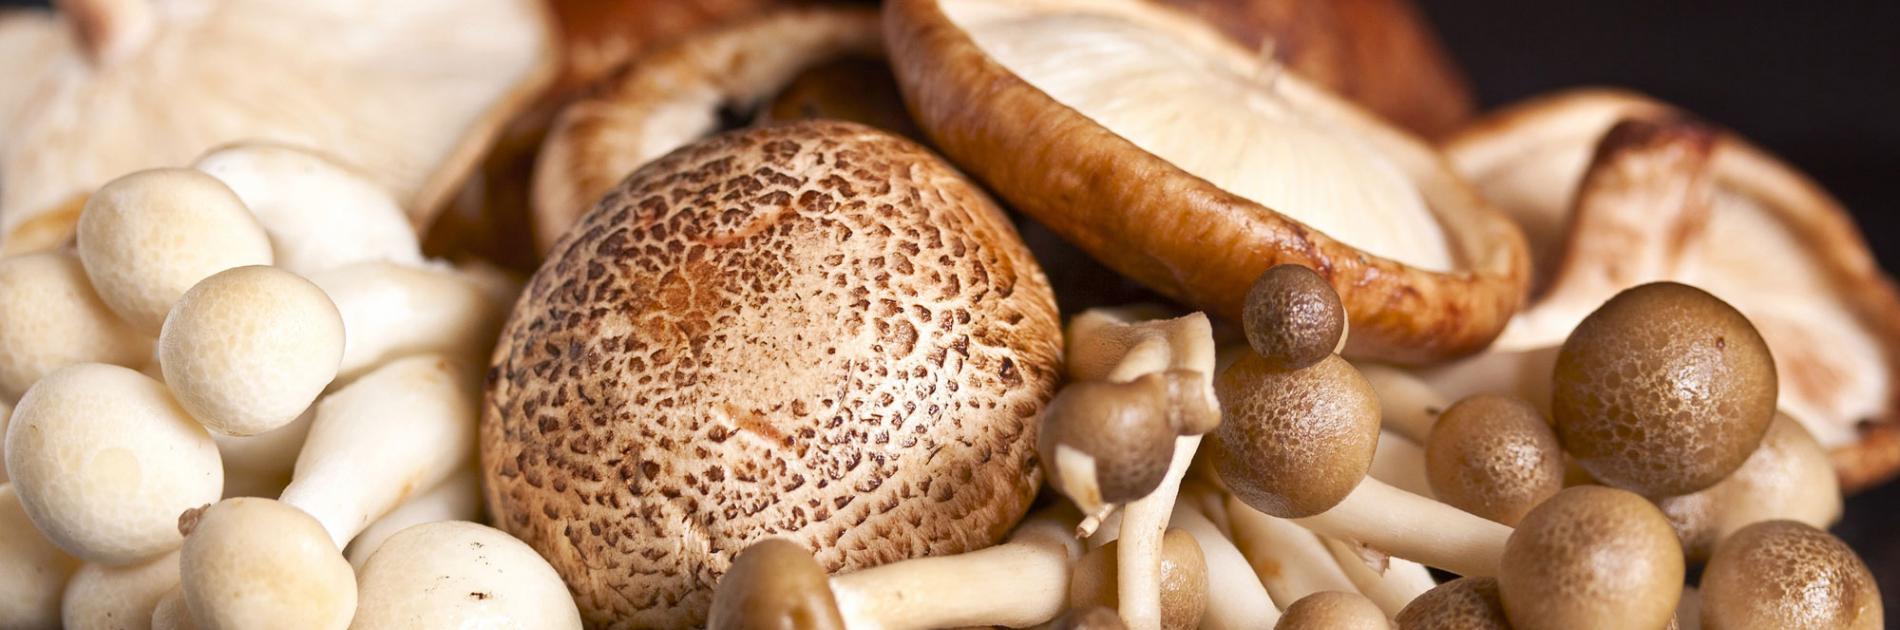 Viscid mushroom (Nameko)